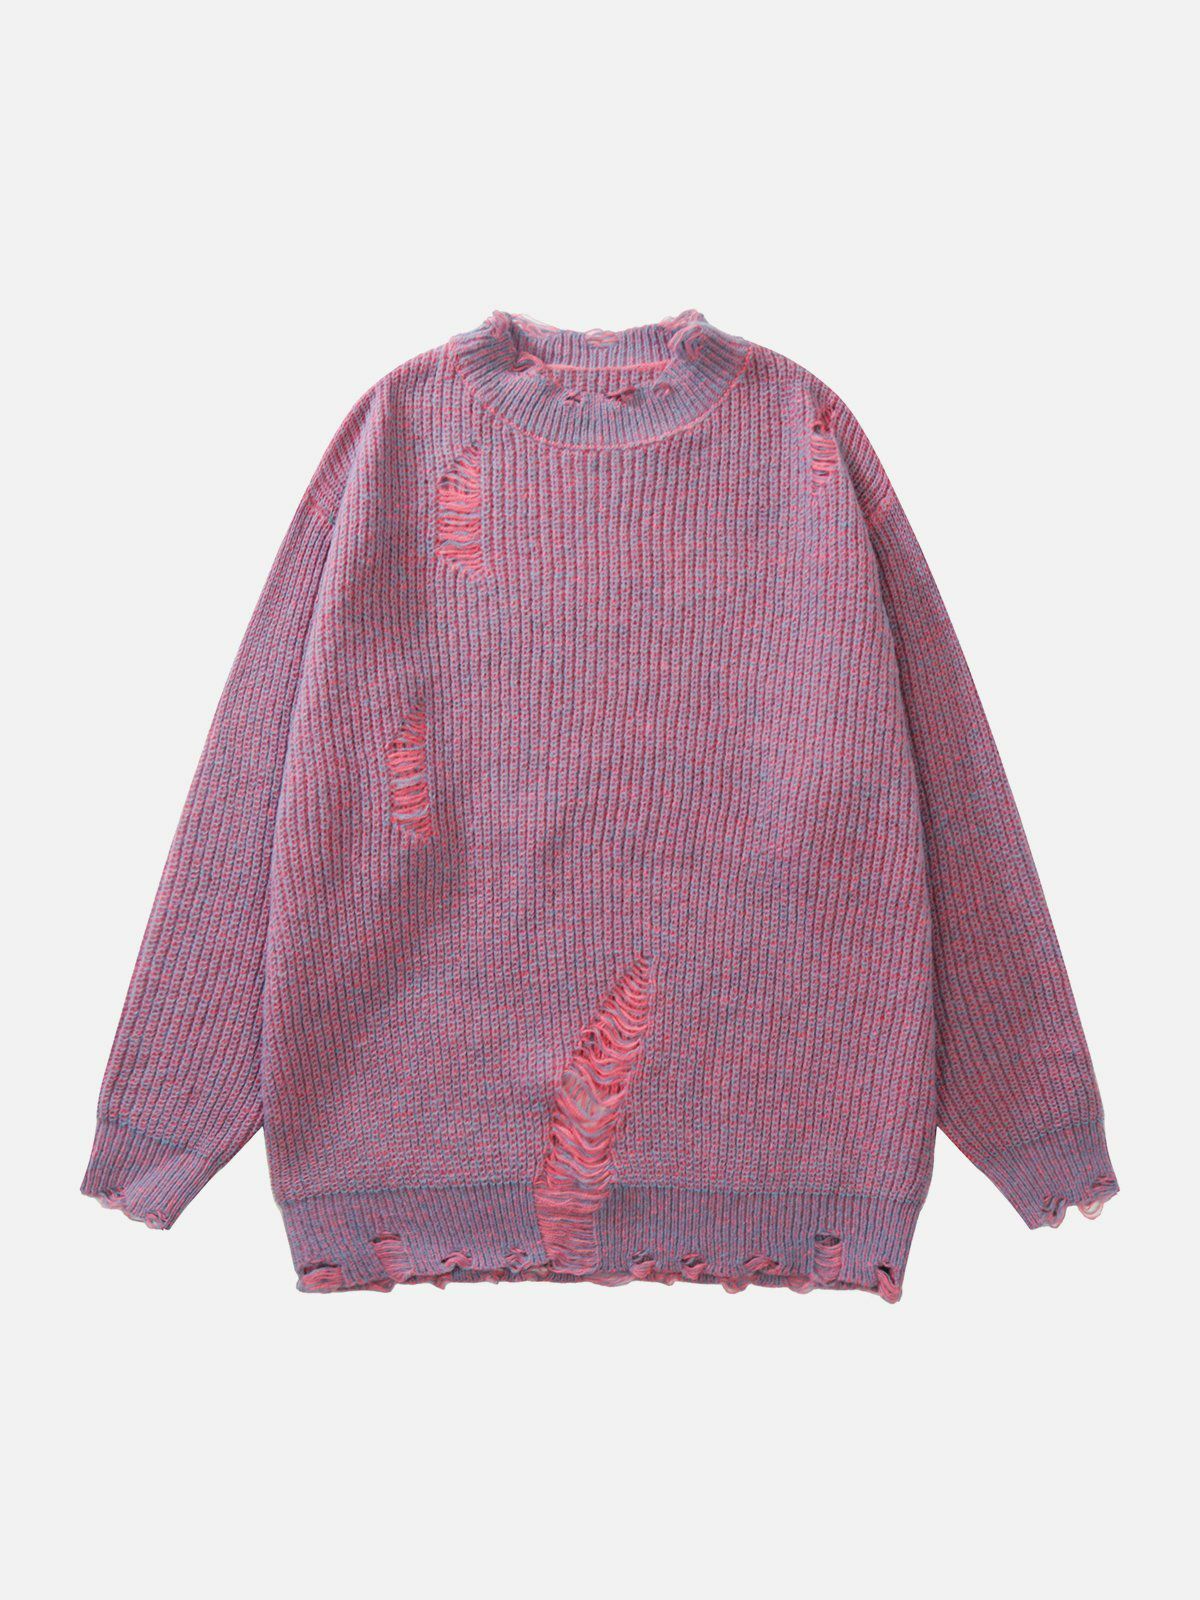 retro ripped knit sweater y2k fashion essential 8875